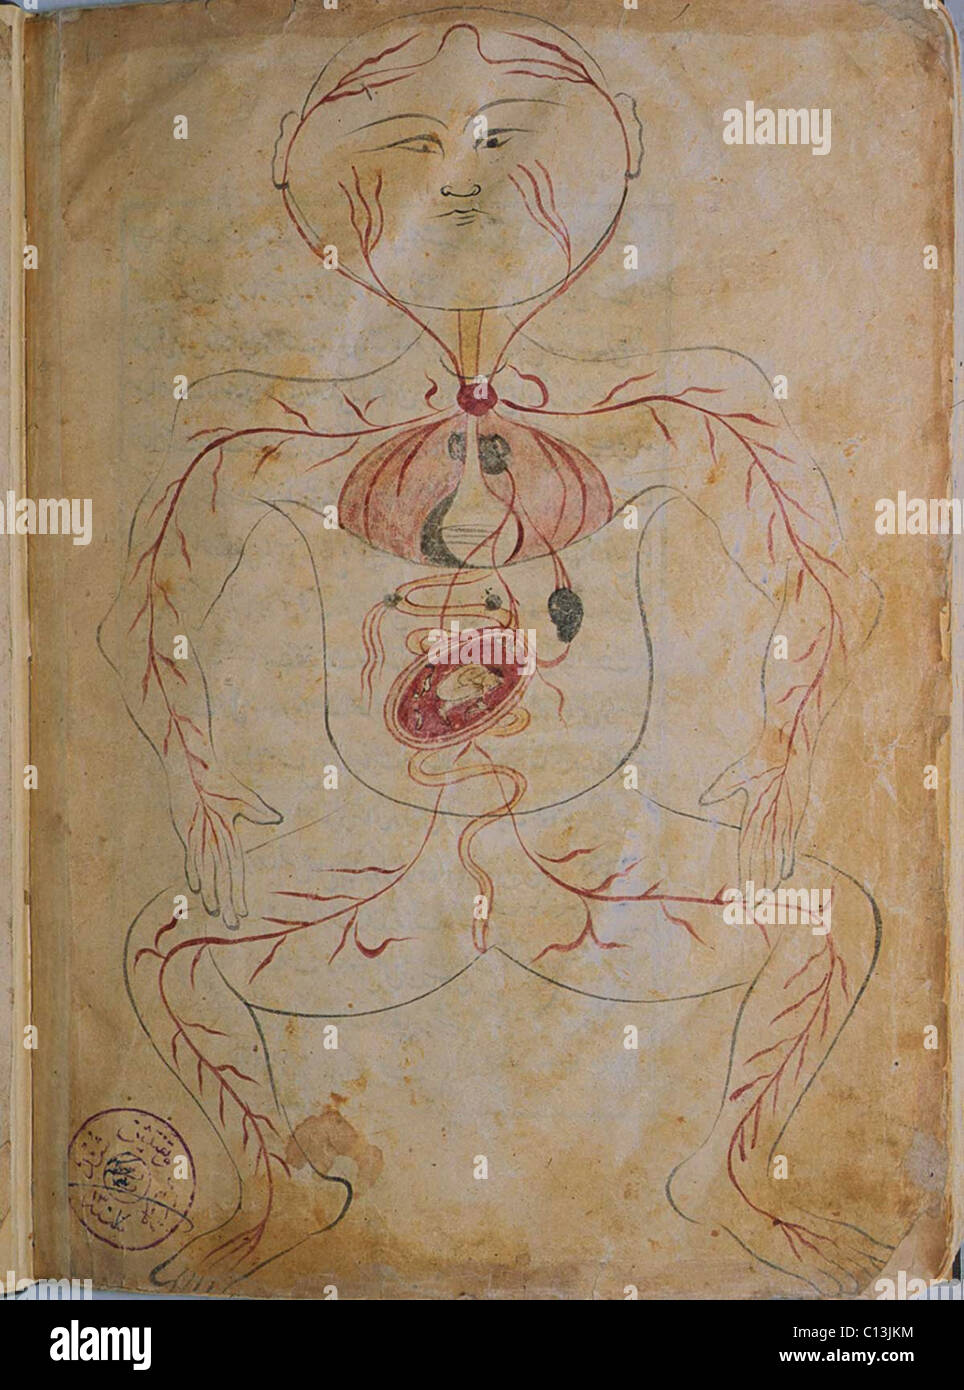 Una donna in stato di gravidanza, da MANSUR'S ANATOMY, creato dal persiano di studioso e di medico, Mansur ibn Ilyas (ca. 1370-1423). La figura mostra le arterie, organi interni quali fegato, stomaco, milza e reni. Il feto è in violazione di posizione e attaccata al cuore da una arteria. Copia completata da Hasan ibn Ahmad, lavorando in Isfahan, nel 1488. Foto Stock